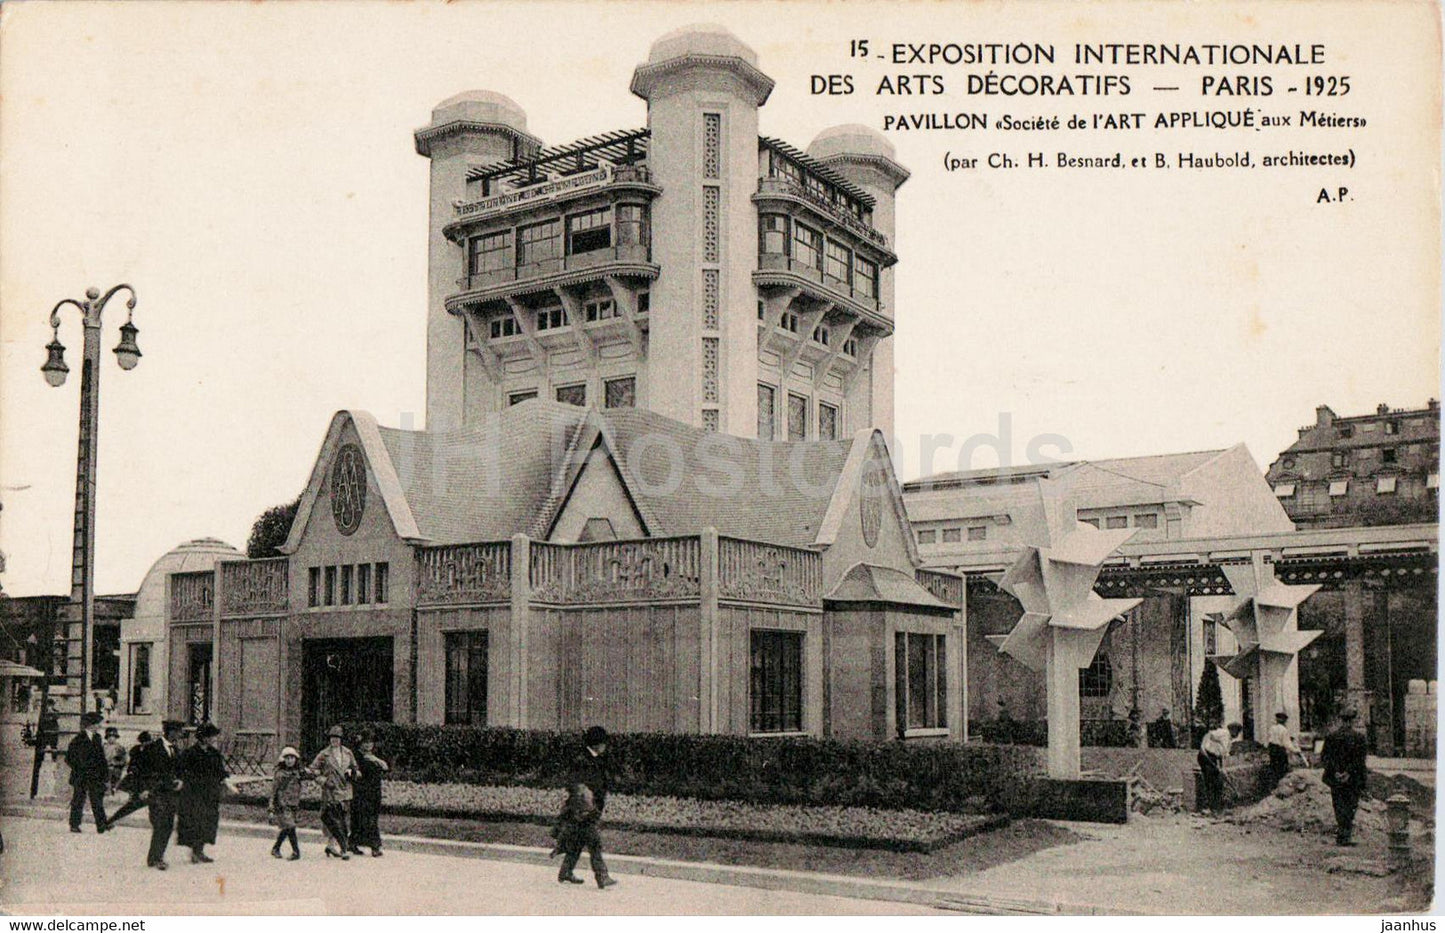 Paris - Exposition Internationale des Art Decoratifs 1925 - Pavillon Societe - 15 - old postcard - France - unused - JH Postcards